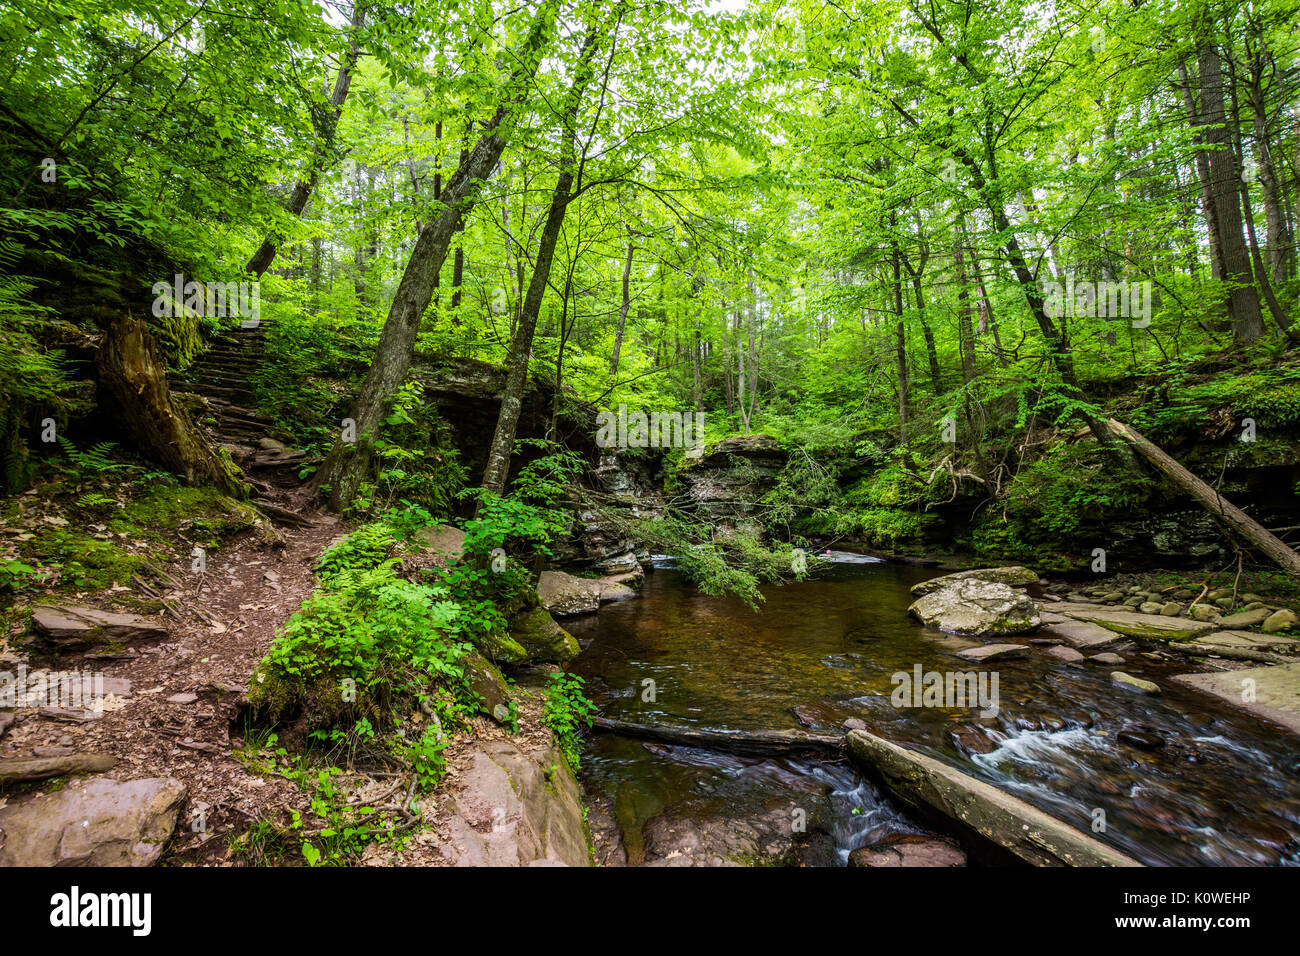 Scenic Waterfall in Ricketts Glen State Park in The Poconos in Pennsylvania Stock Photo